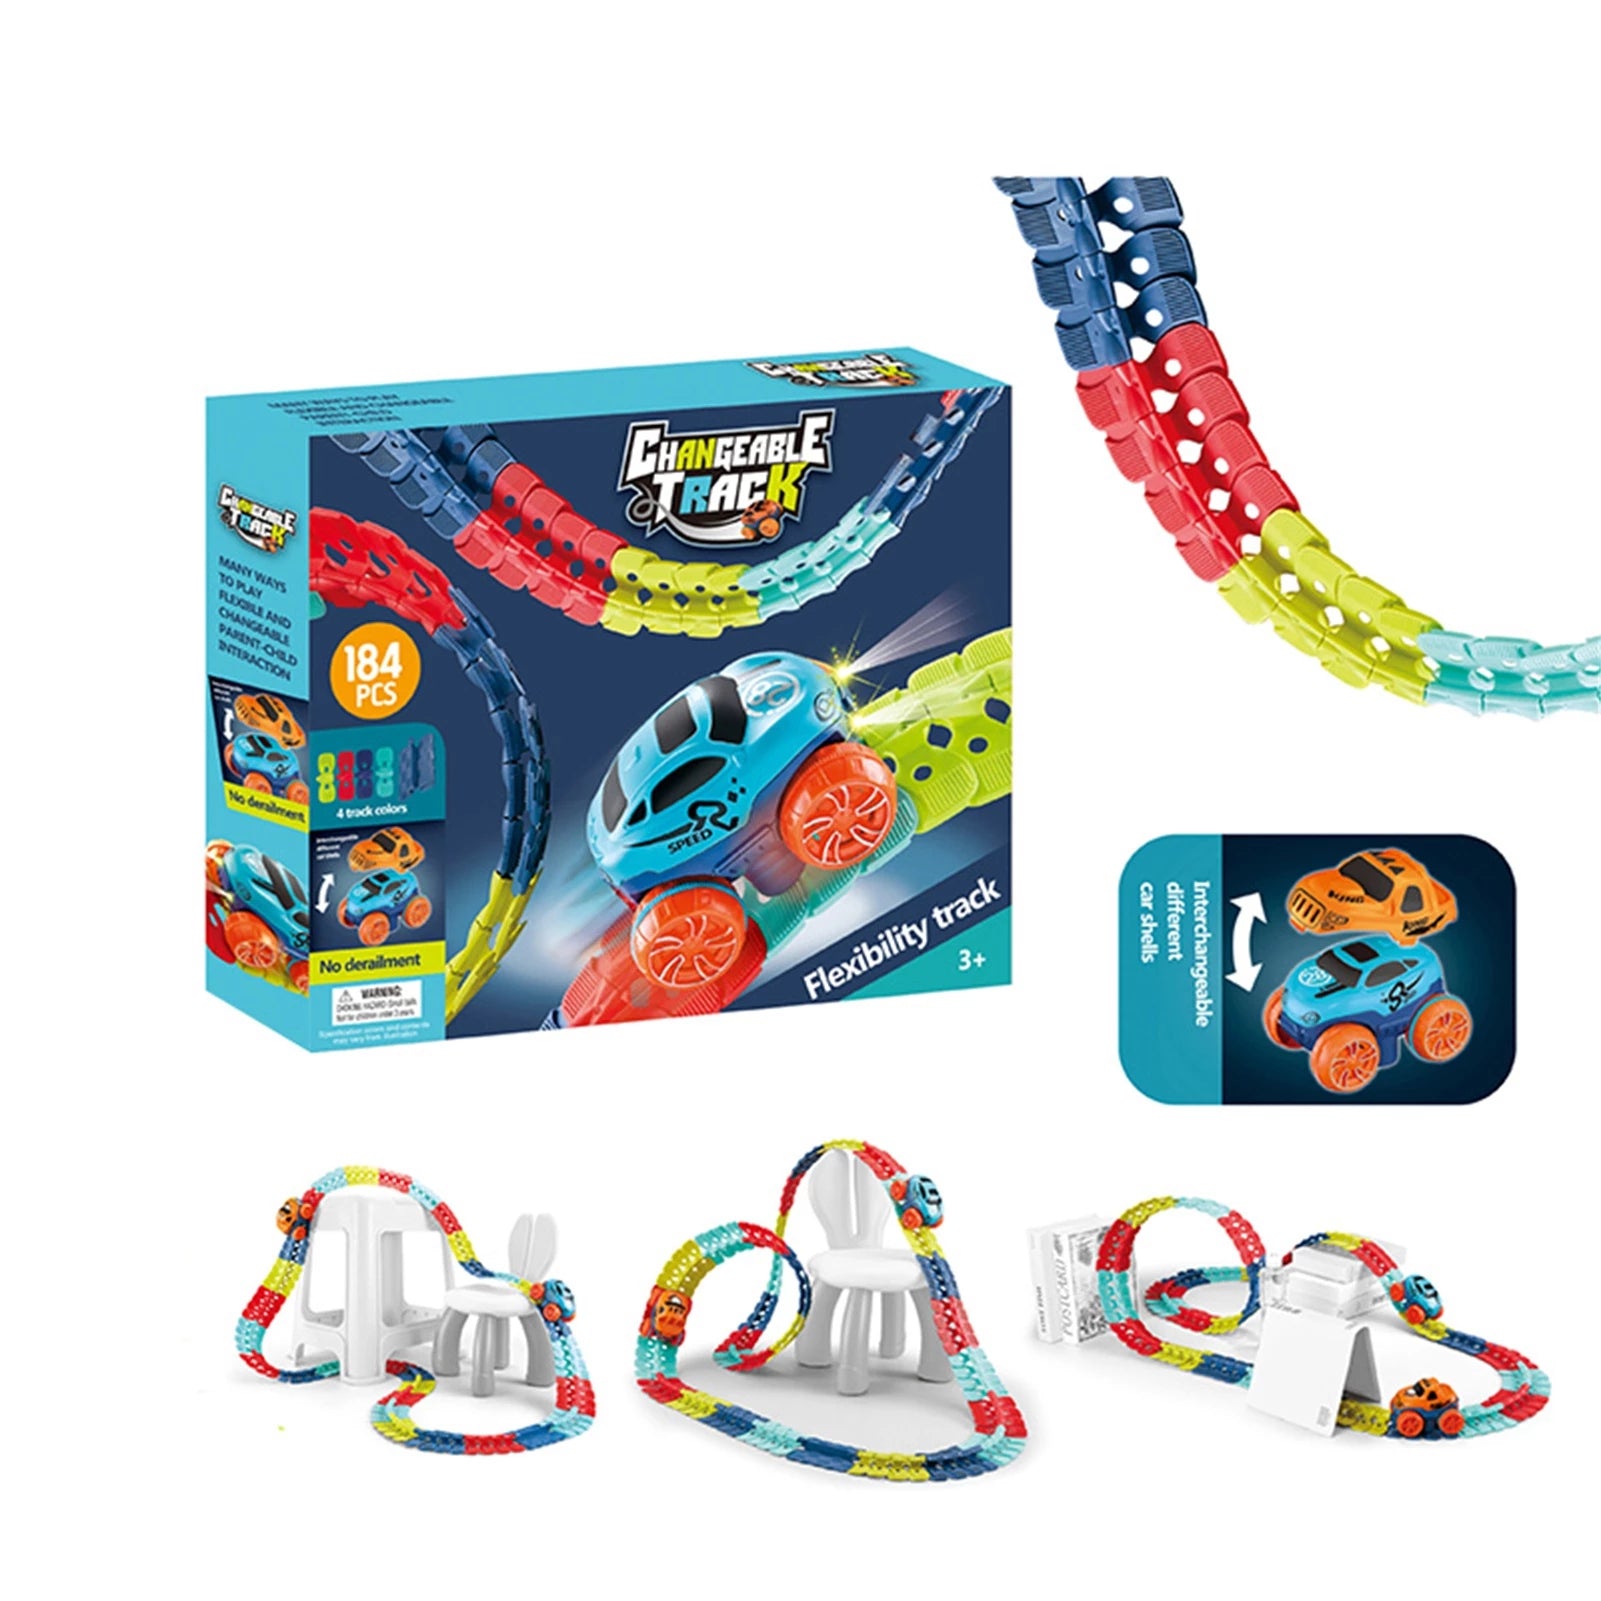 KidsPlay™ - 🧲Magnetische autospeelbaan l Speel - overal - in huis